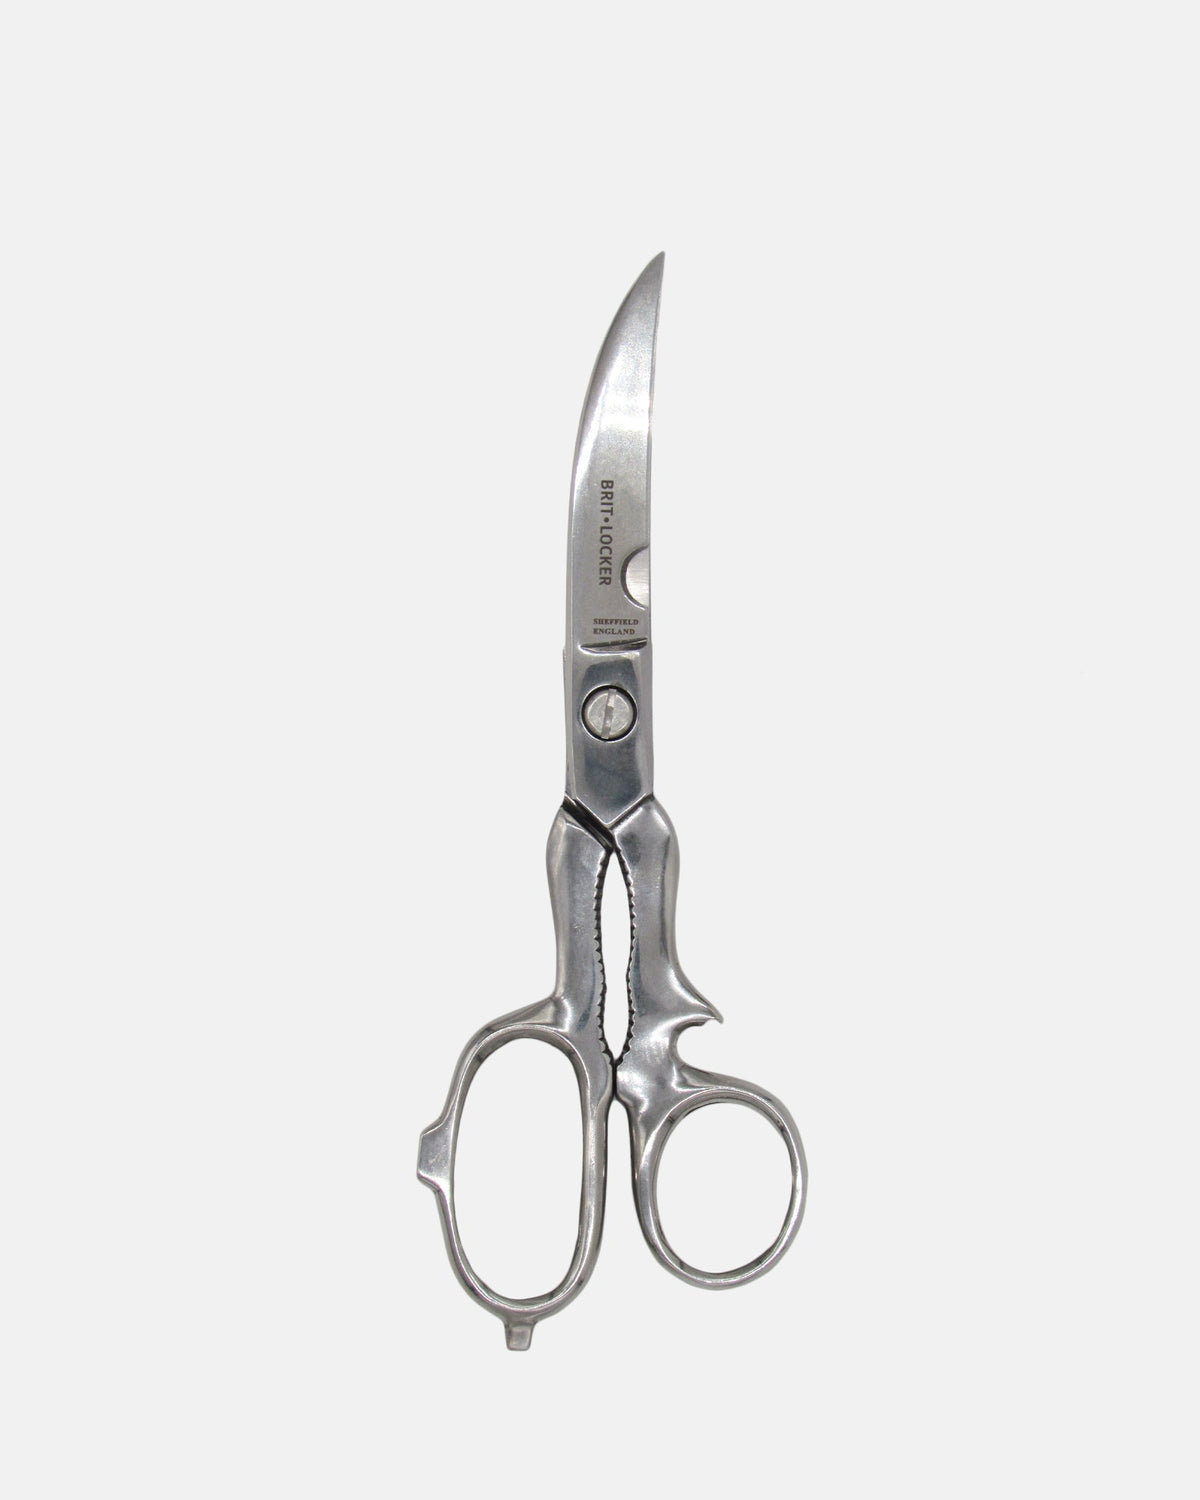 Kitchen Scissors Stainless Steel - BRIT LOCKER